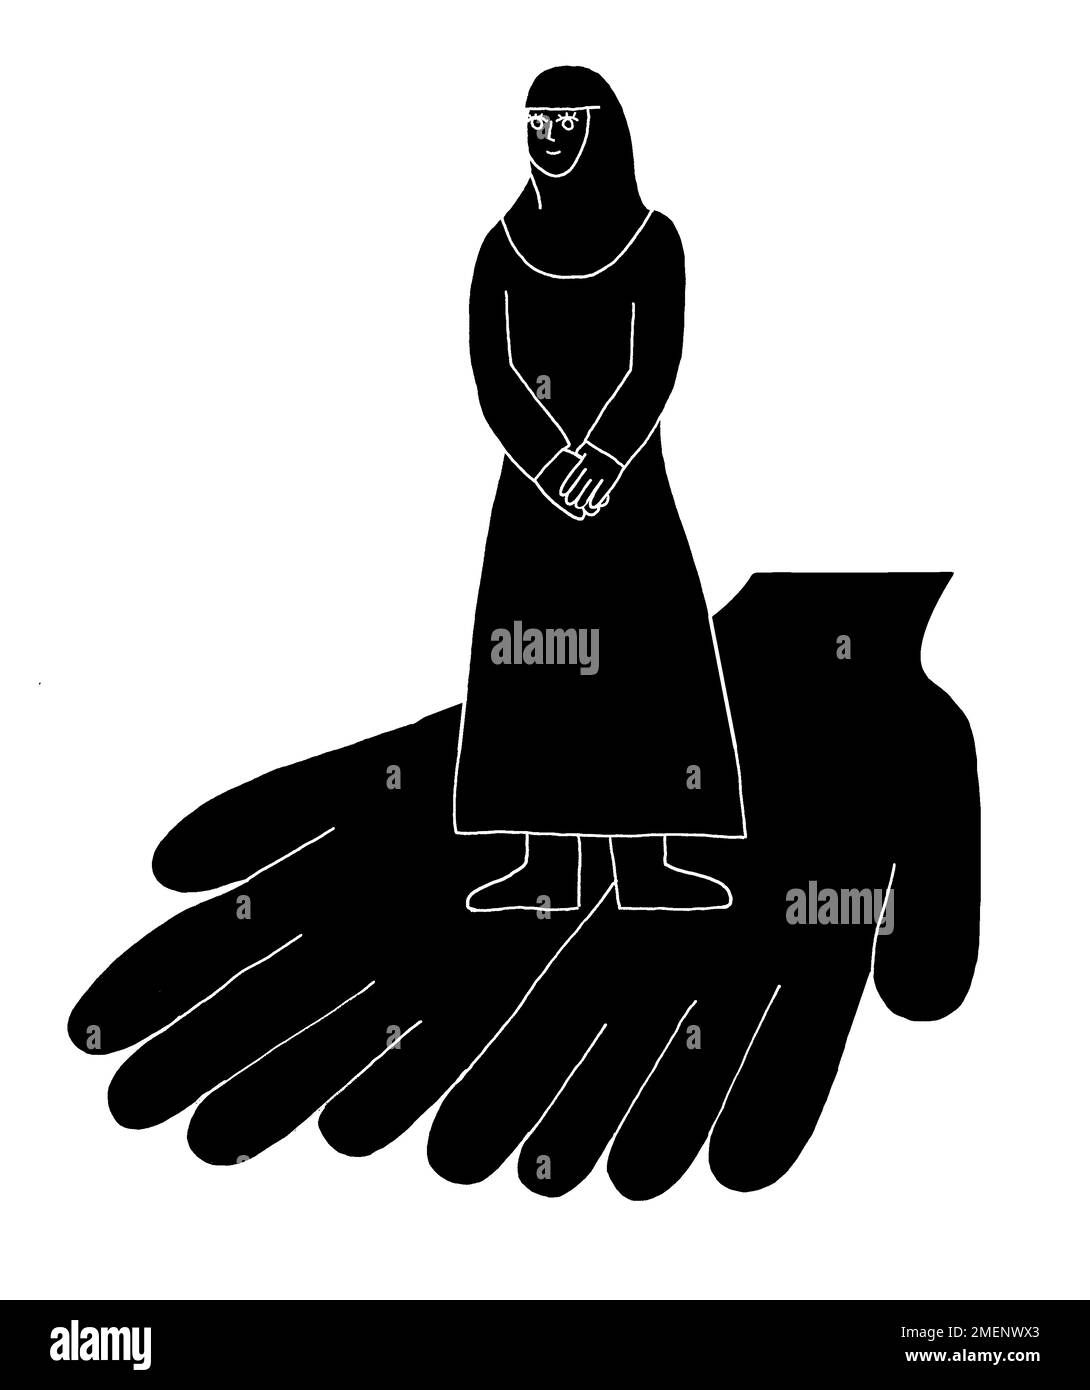 Illustrazione in bianco e nero di mani che detengono la figura di un muscima, che illustra la convinzione di Shirin Ebadi che nessuna legge islamica dice violi i diritti delle donne Foto Stock